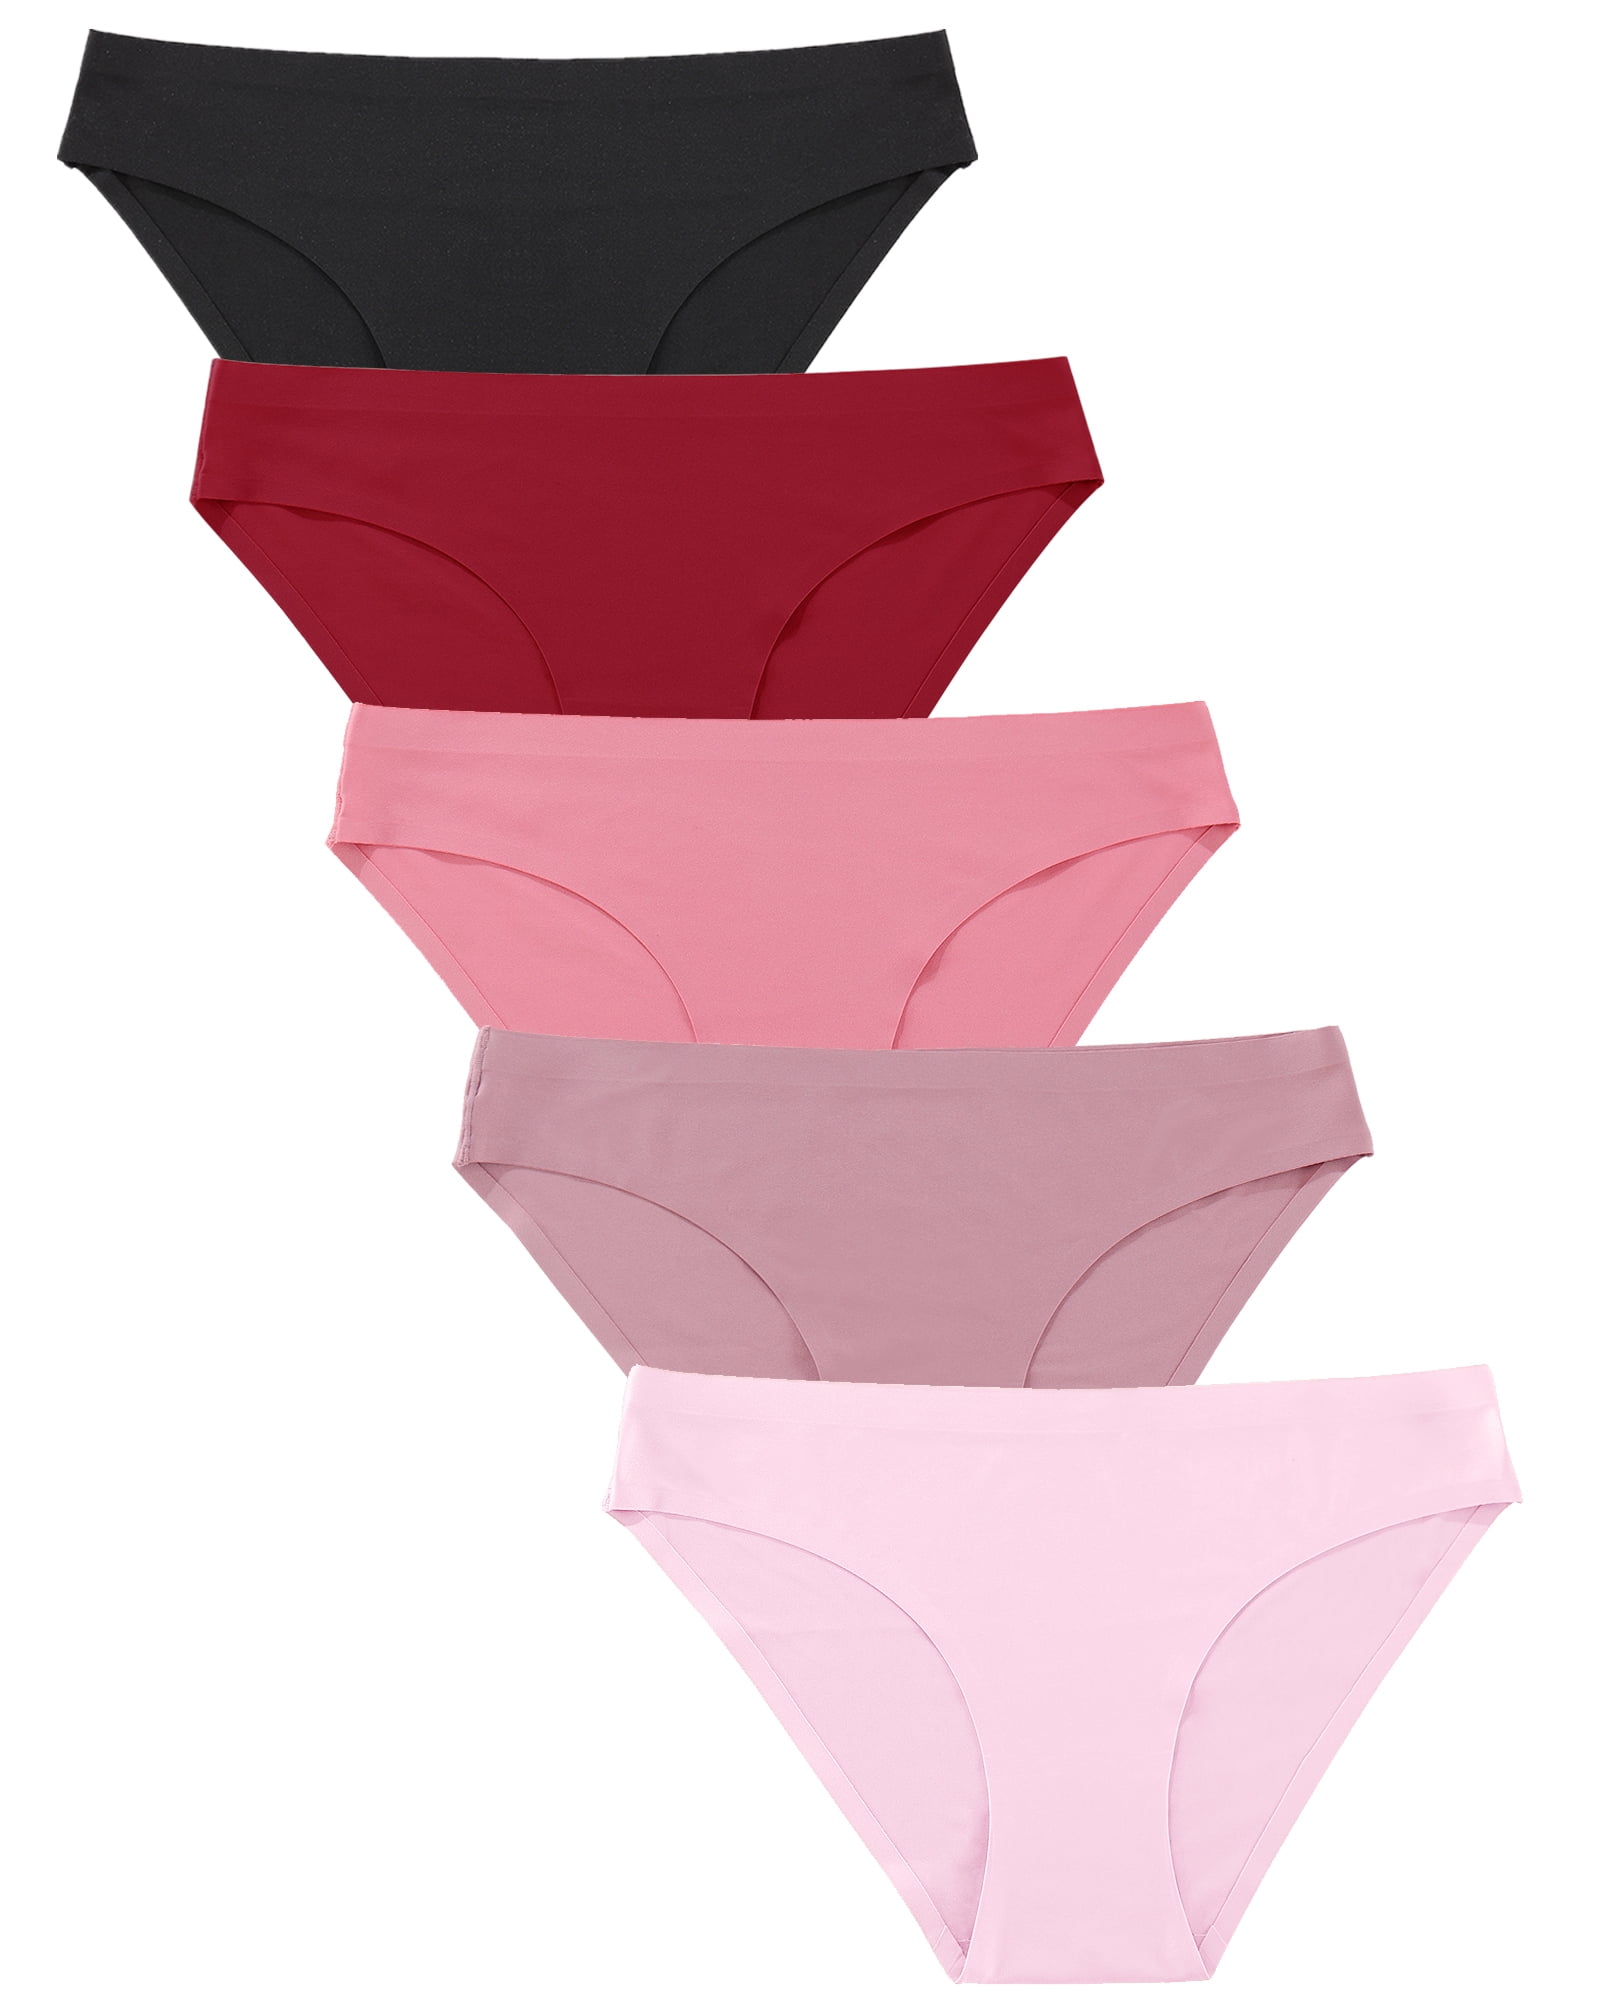 Fiomva Women Soft Underpants Seamless Briefs Hipster Ultra-Thin Panties 